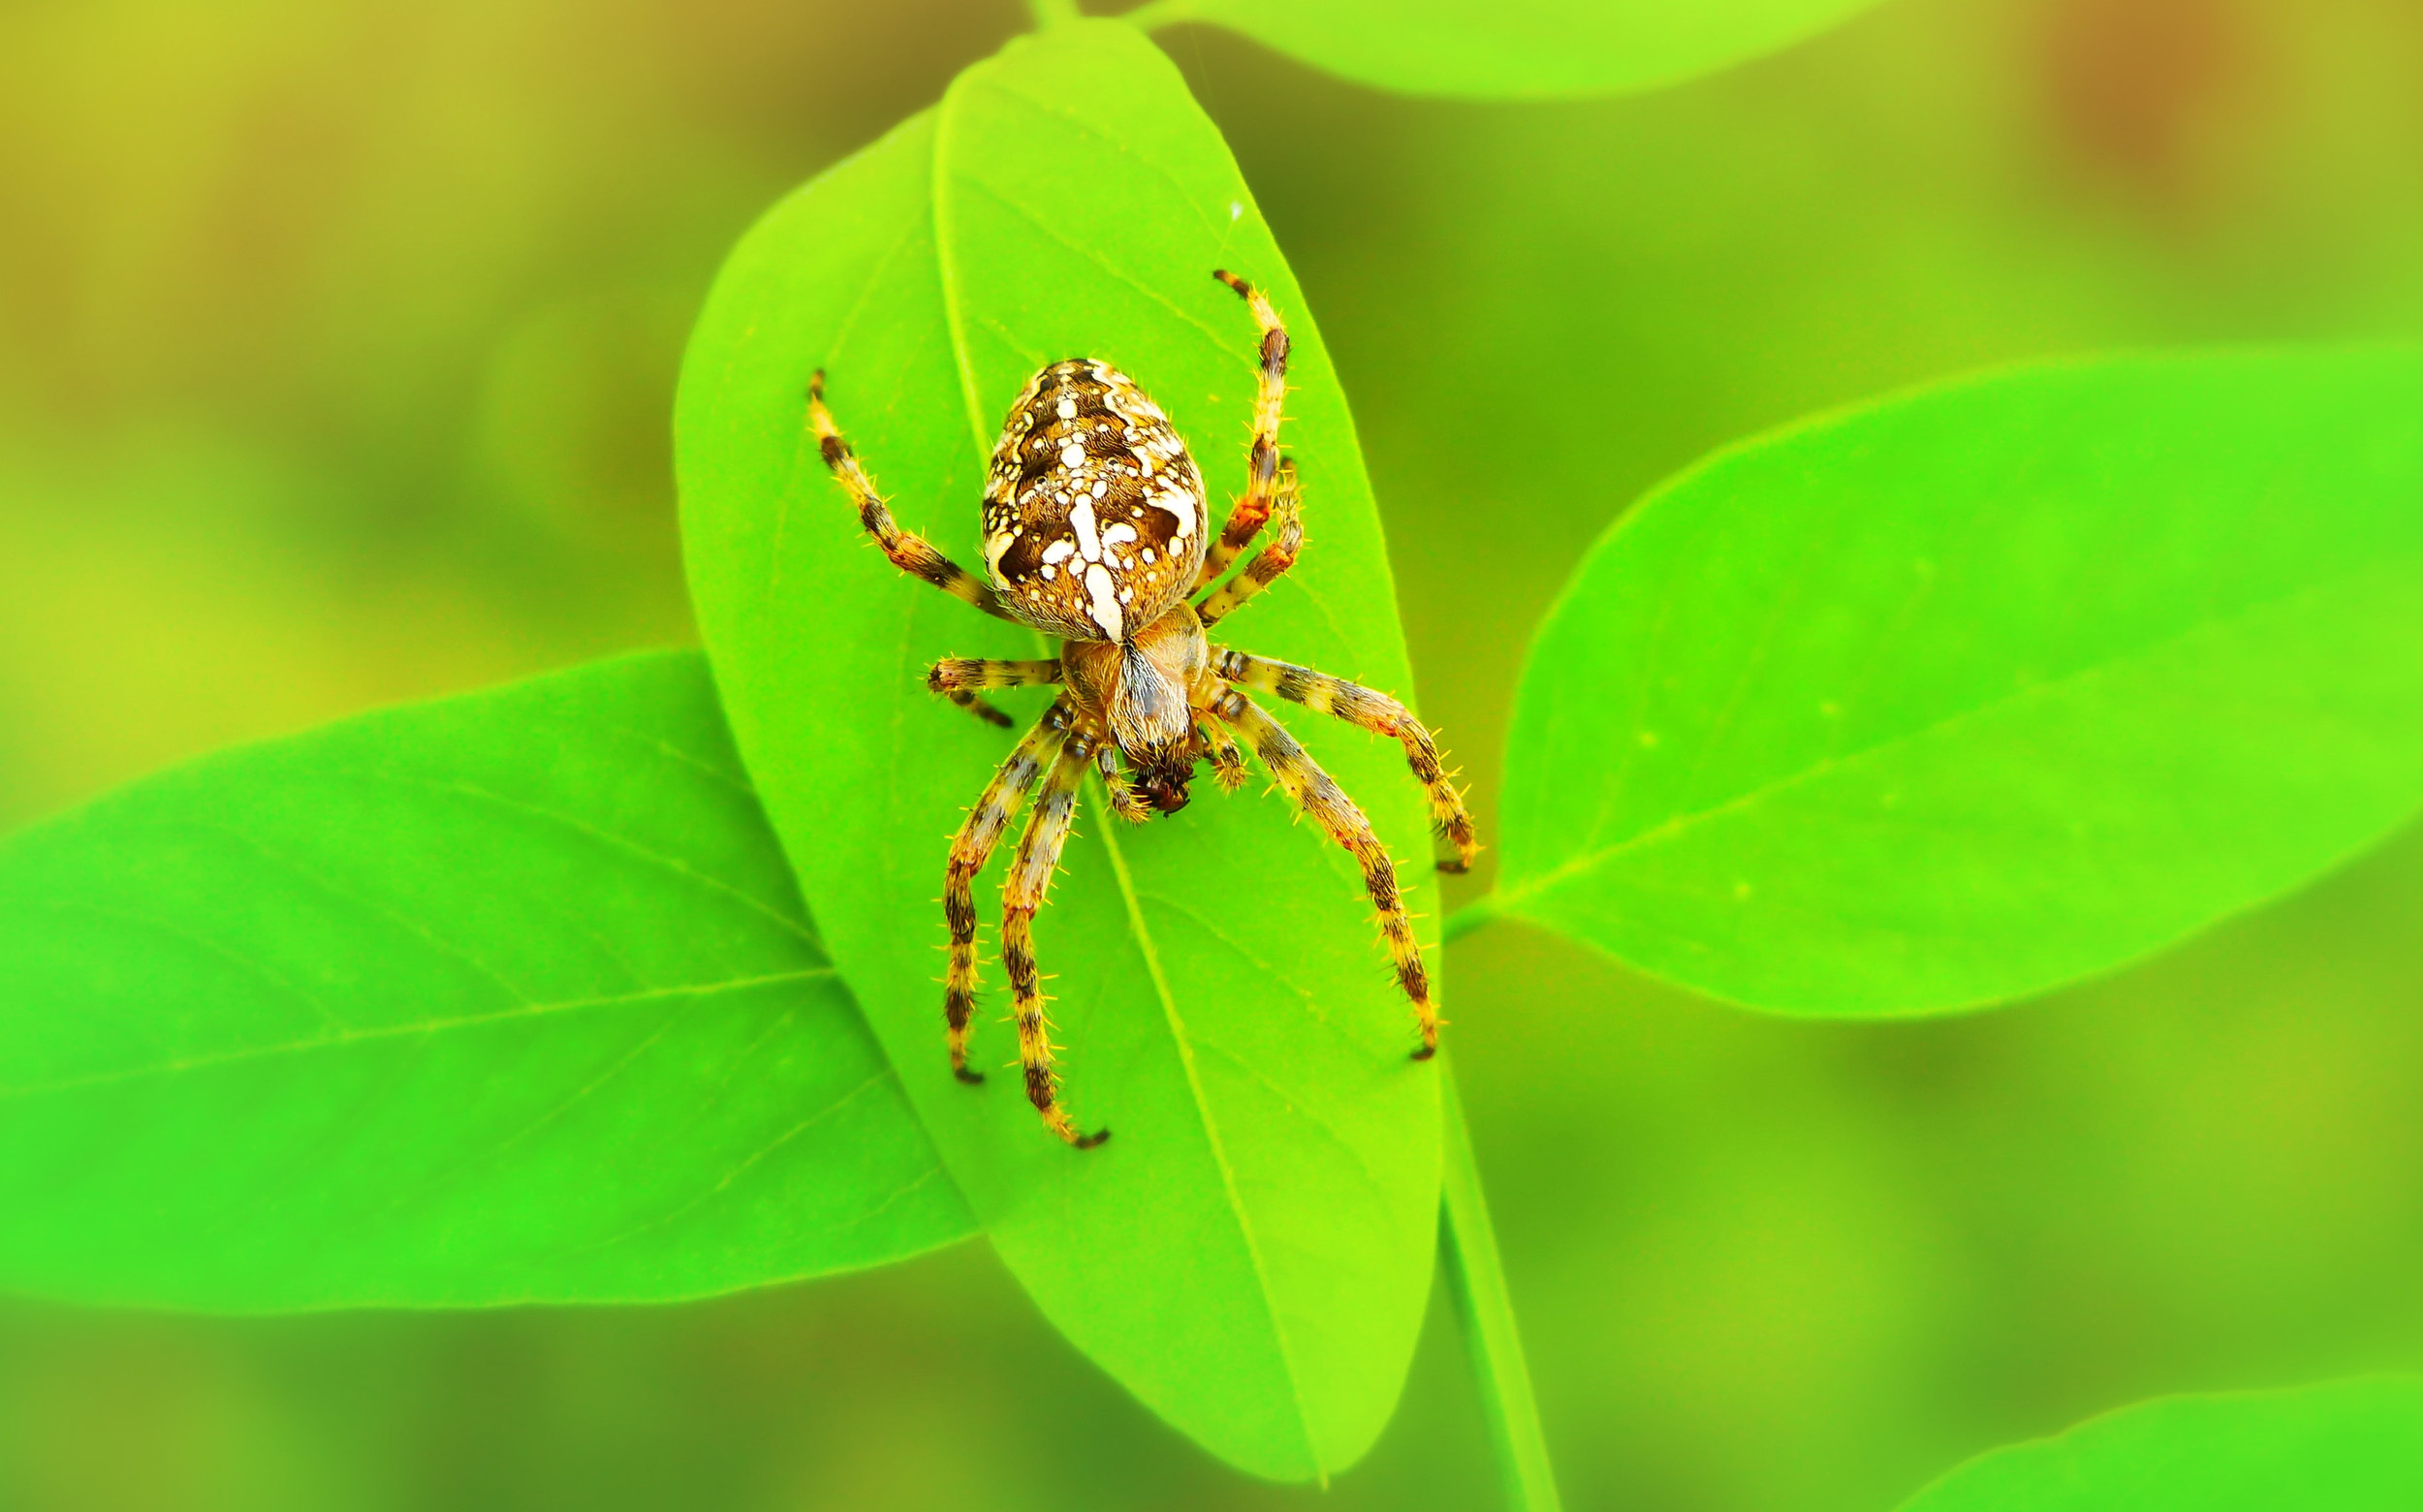 Rüyada Örümcek Görmek | Ruyoka ile Yatakta Örümcek Görmek Ne Demek